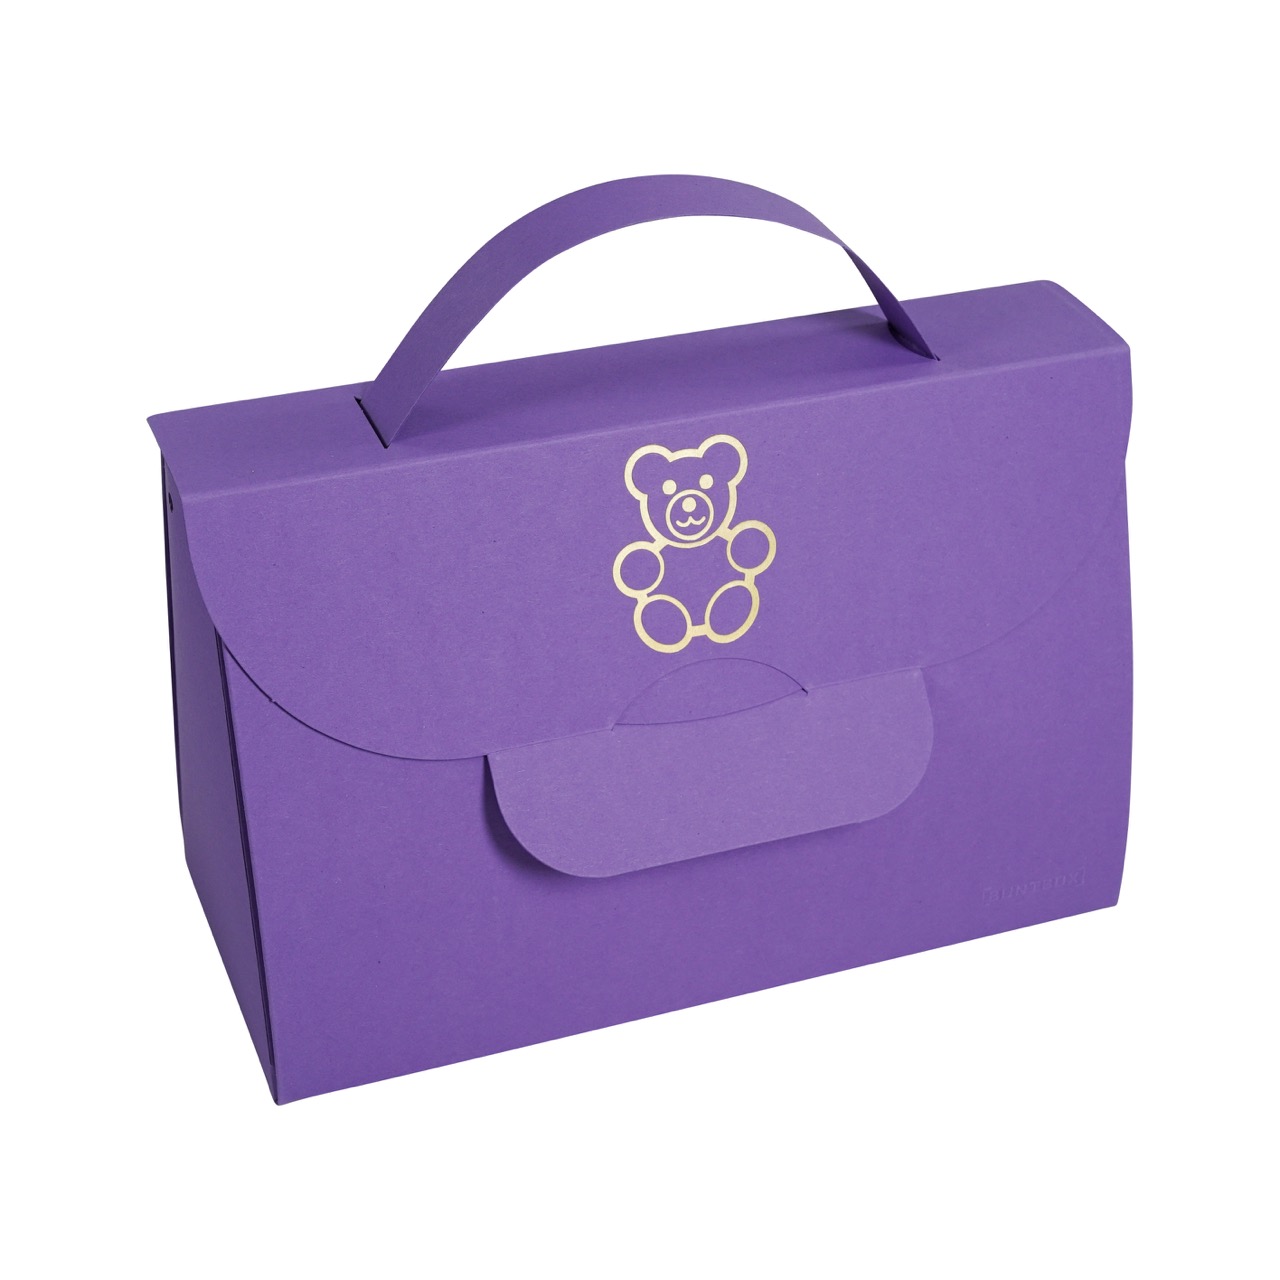 BUNTBOX Handbag Teddy d'oro | borsa di cartone